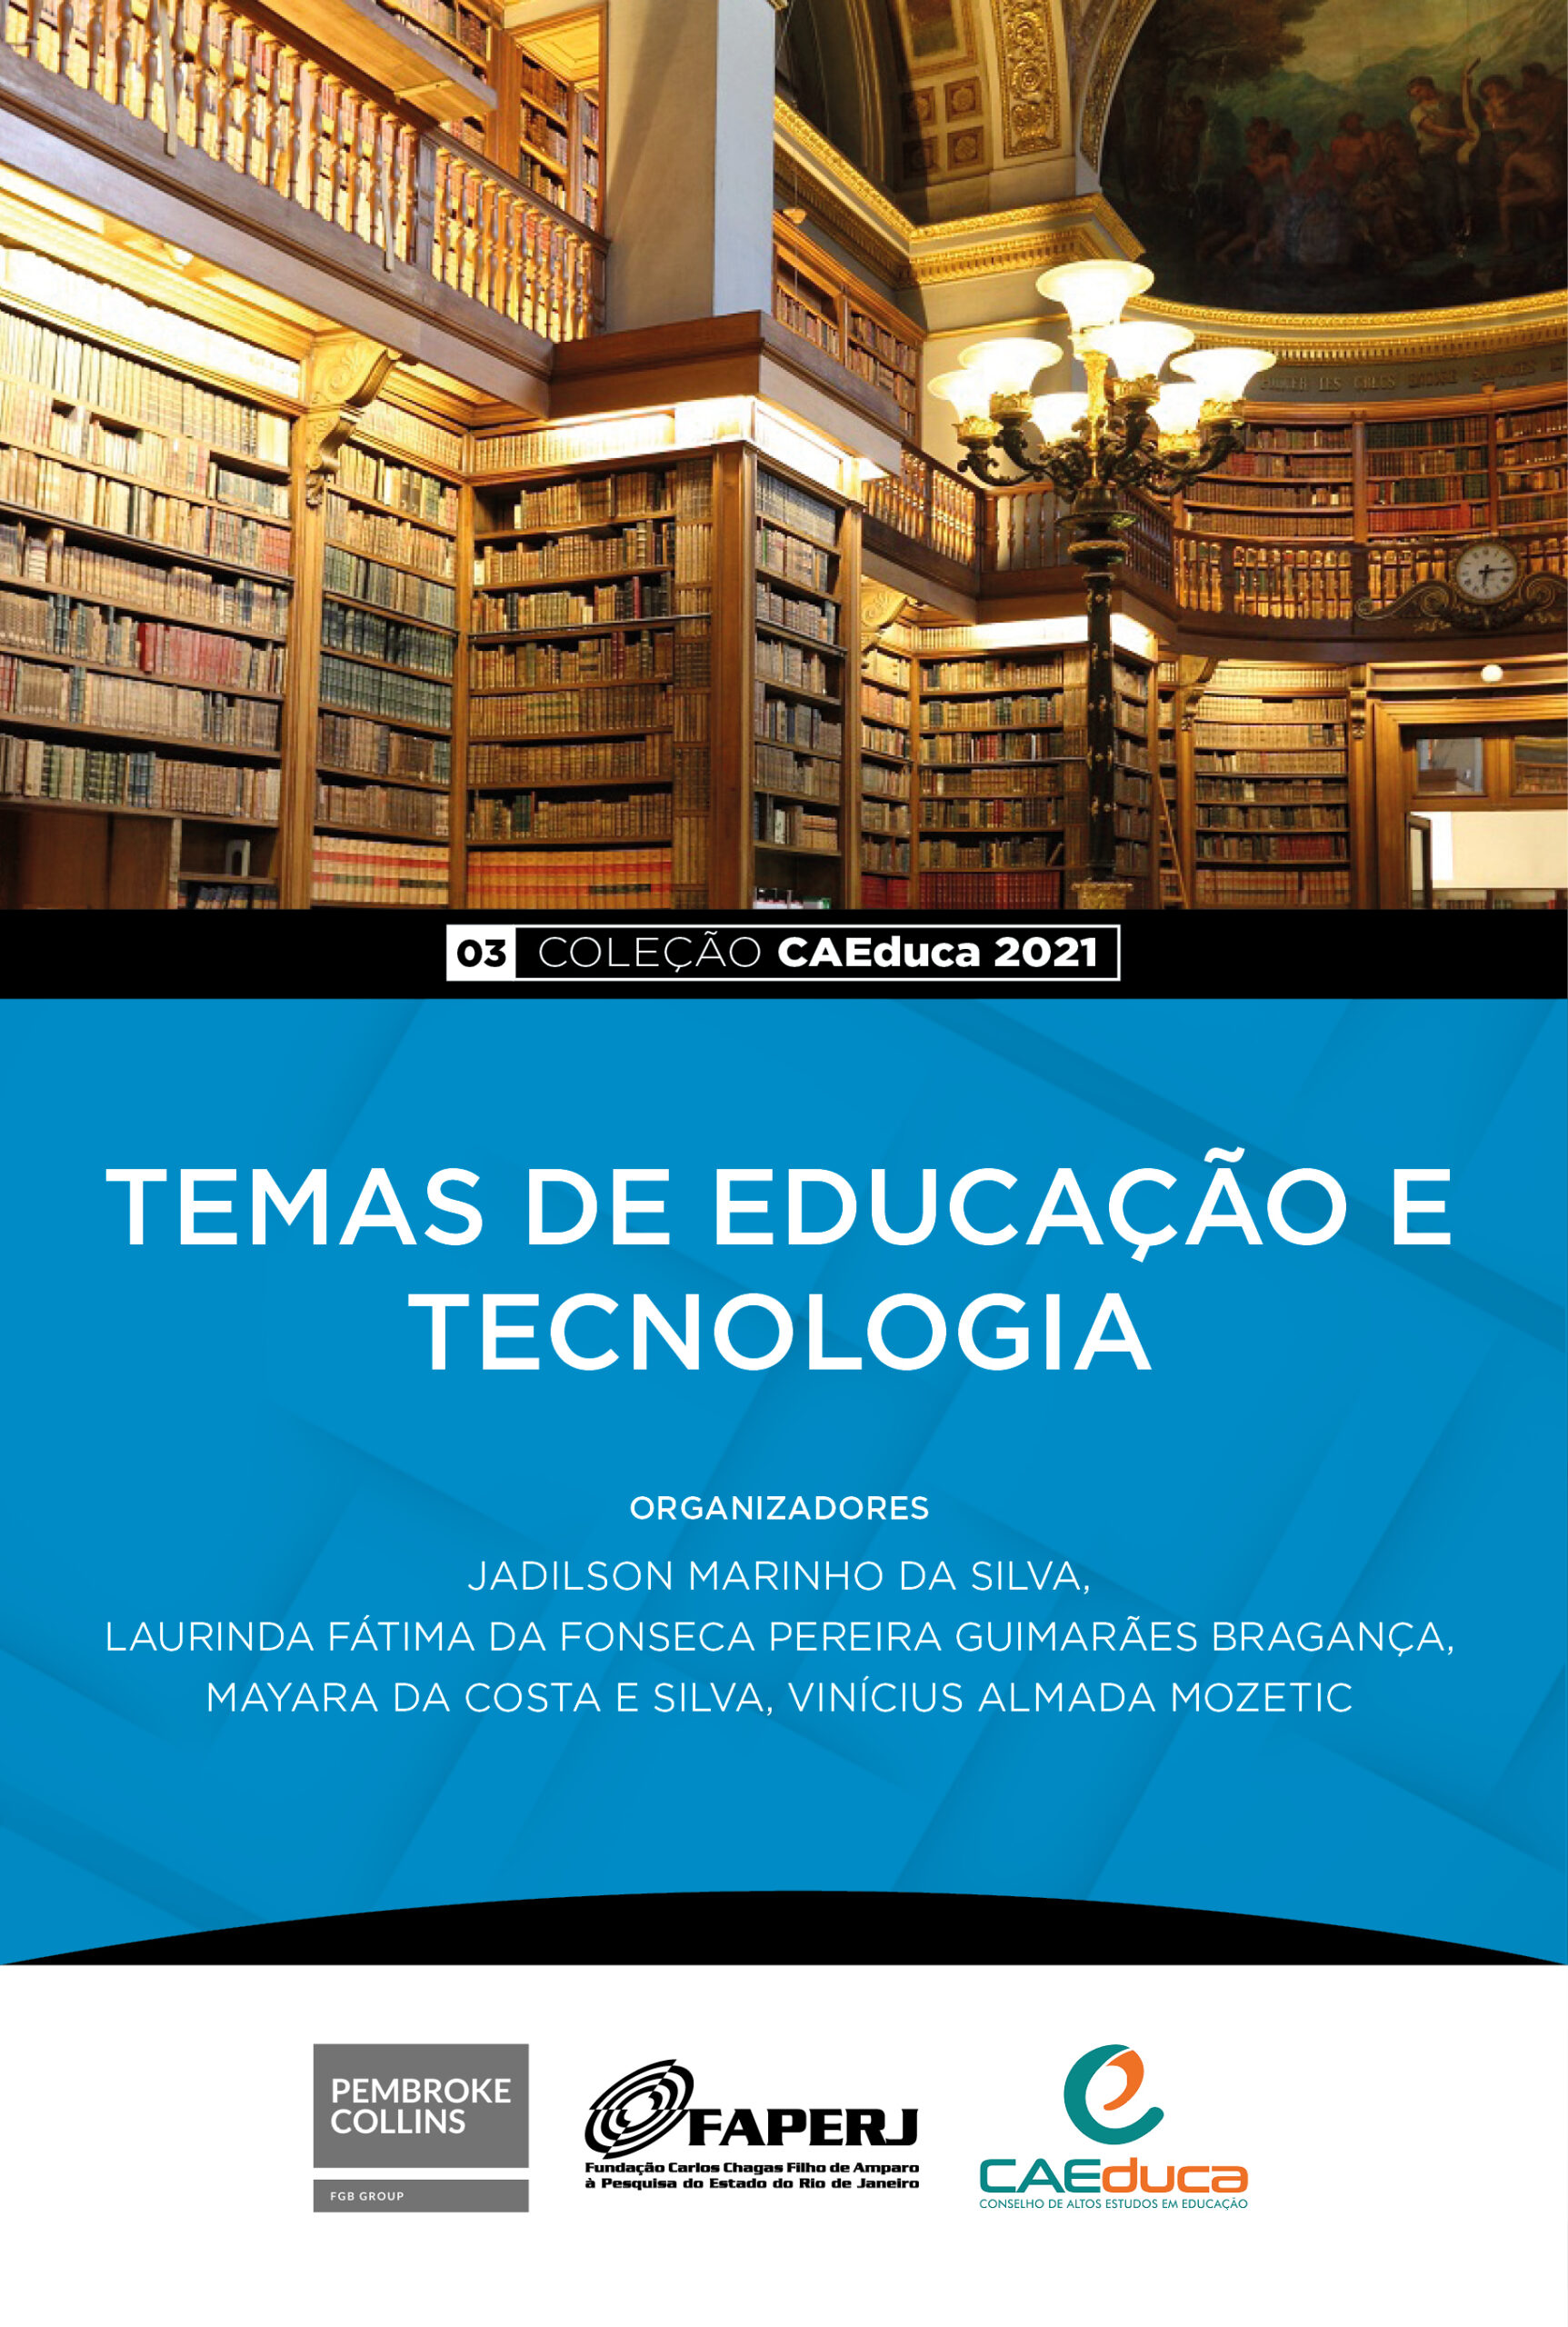 CAEDUCA-03- 2021-Temas de Educação e Tecnologia_CAED-Jus